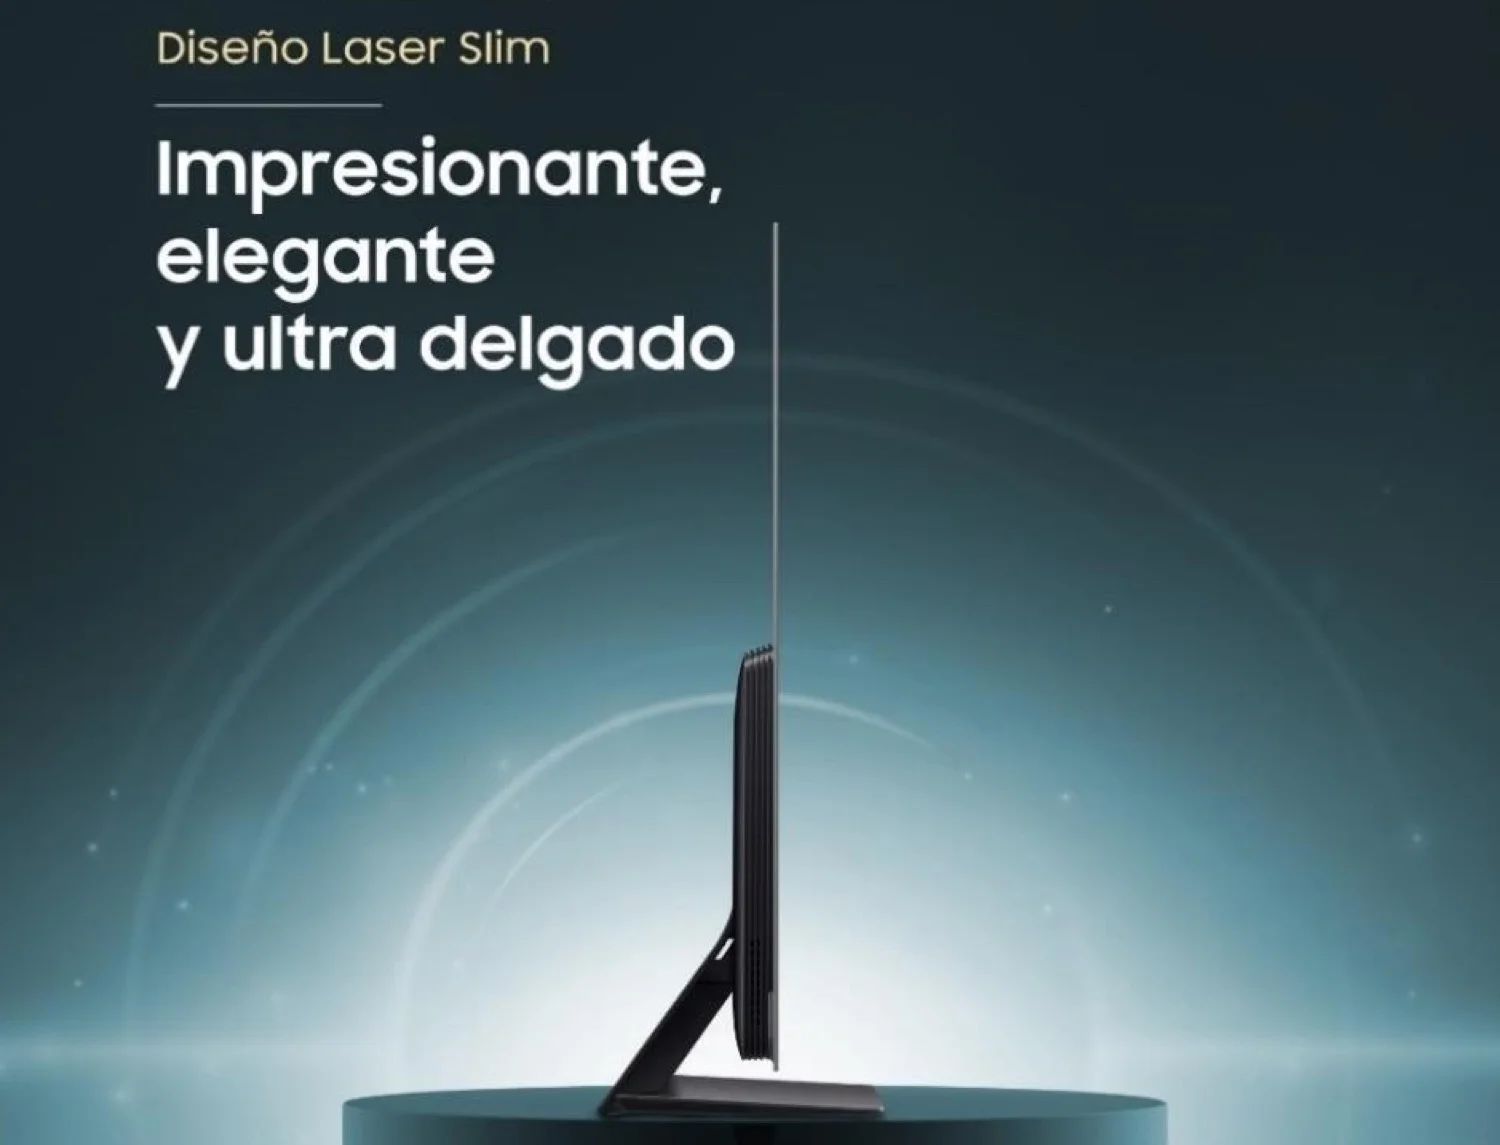 Samsung Perú presenta su nueva línea de televisores OLED